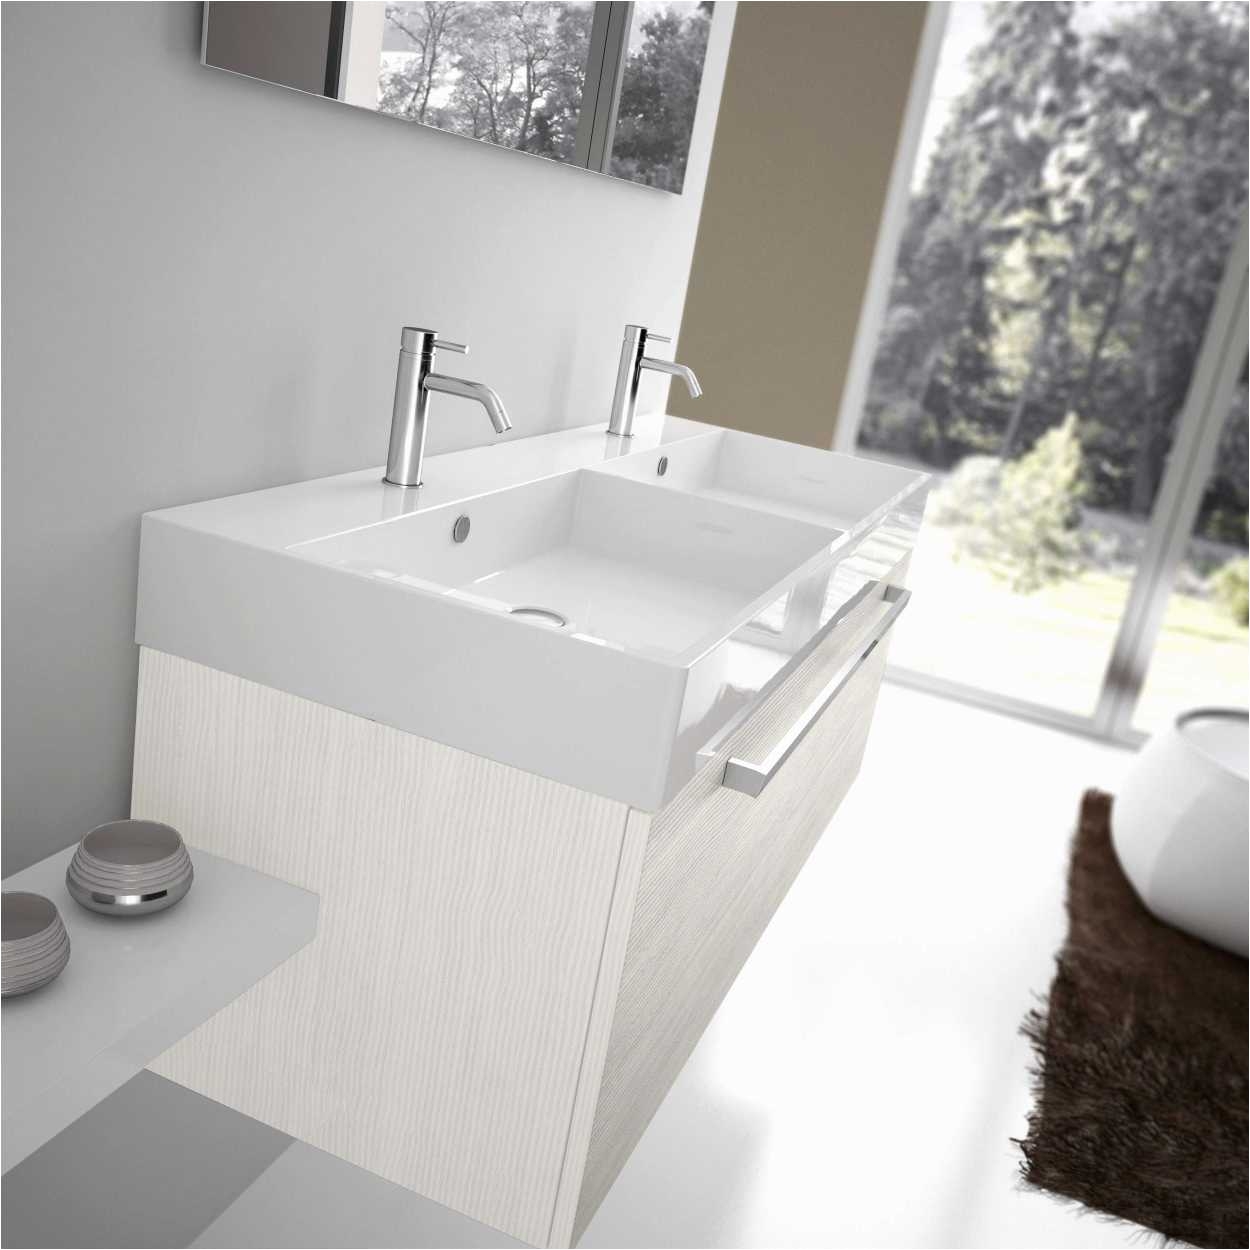 contemporary bathroom design gallery custom bathroom sinks gallery h sink new bathroom i 0d inspiring